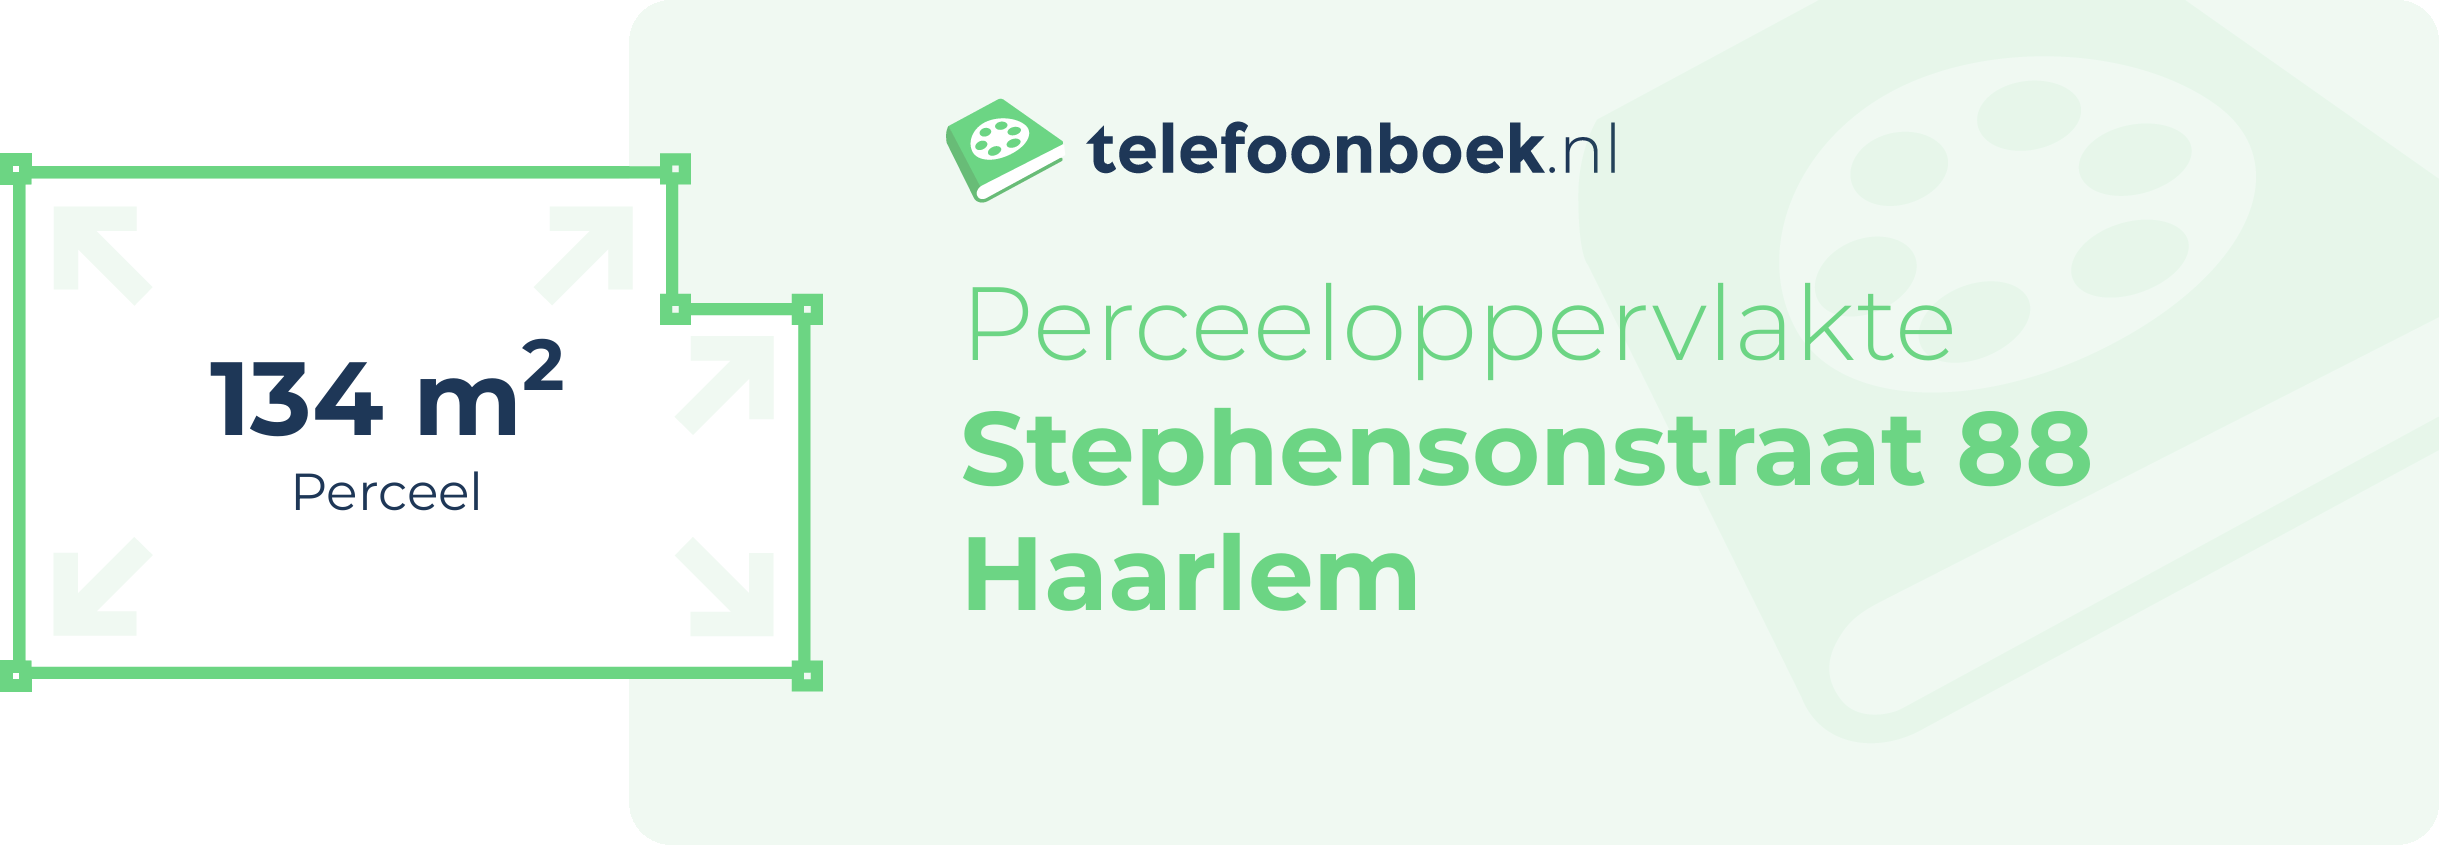 Perceeloppervlakte Stephensonstraat 88 Haarlem